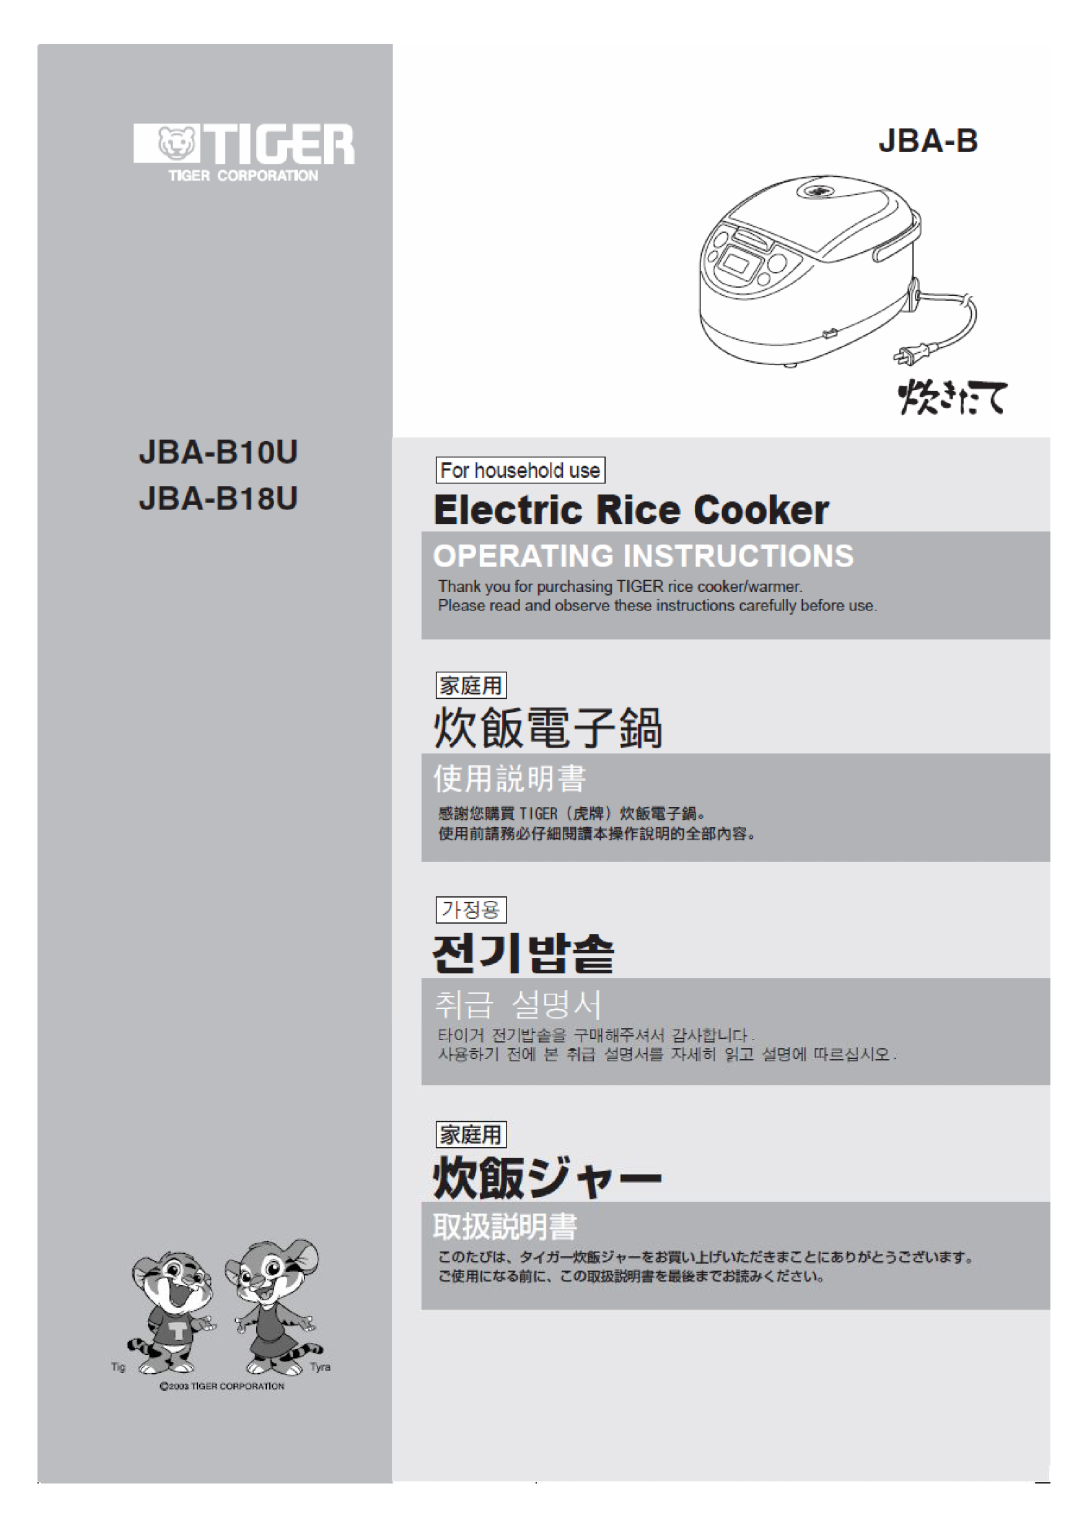 Tiger Products Co., Ltd JBA-B18U, JBA-B10U manual 